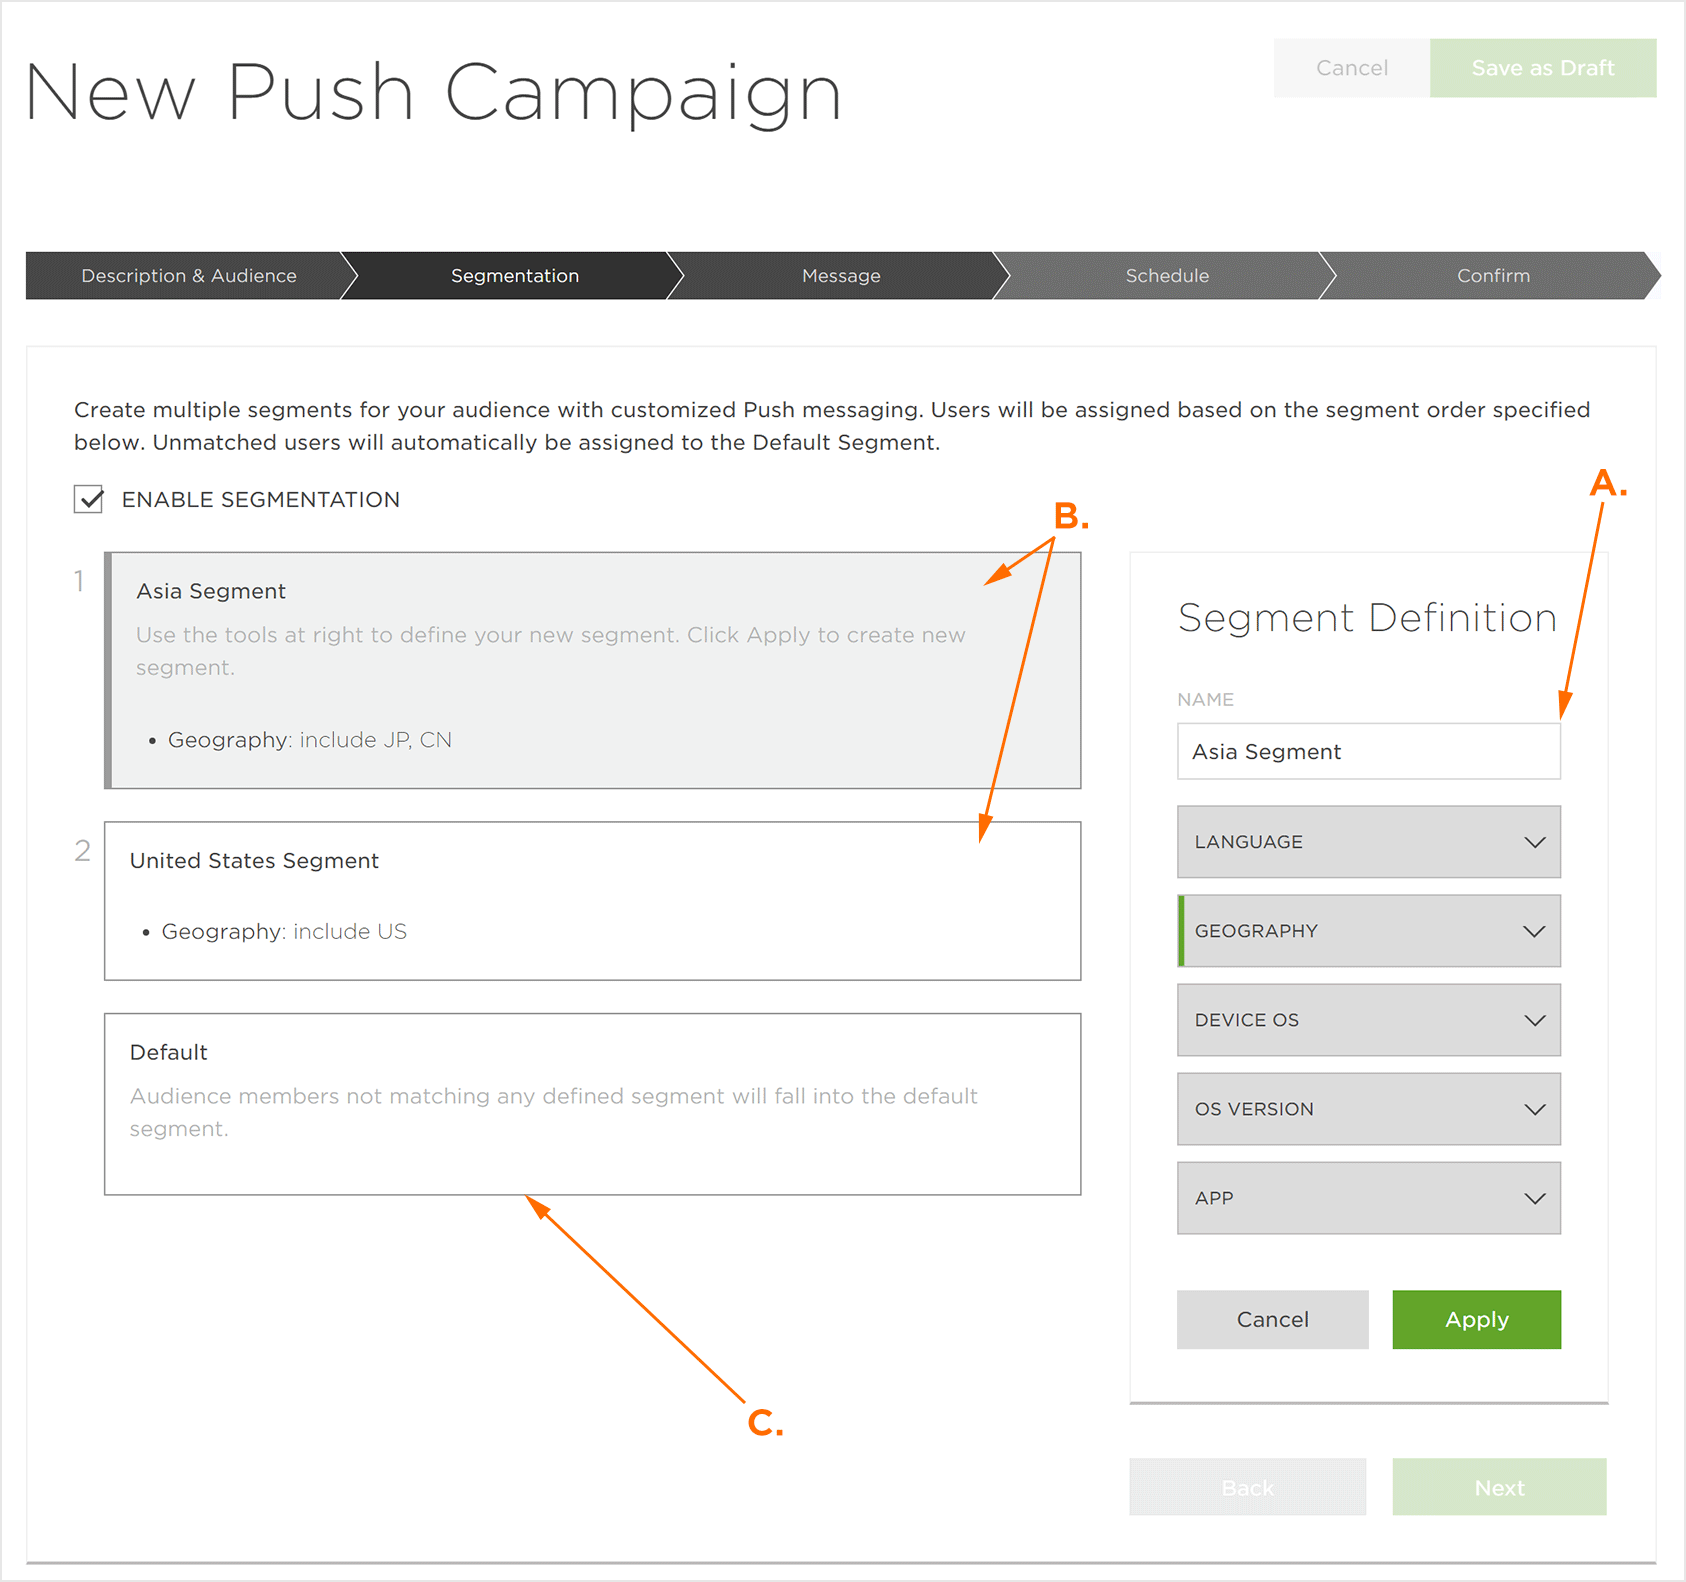 New Push Campaign Segmentation